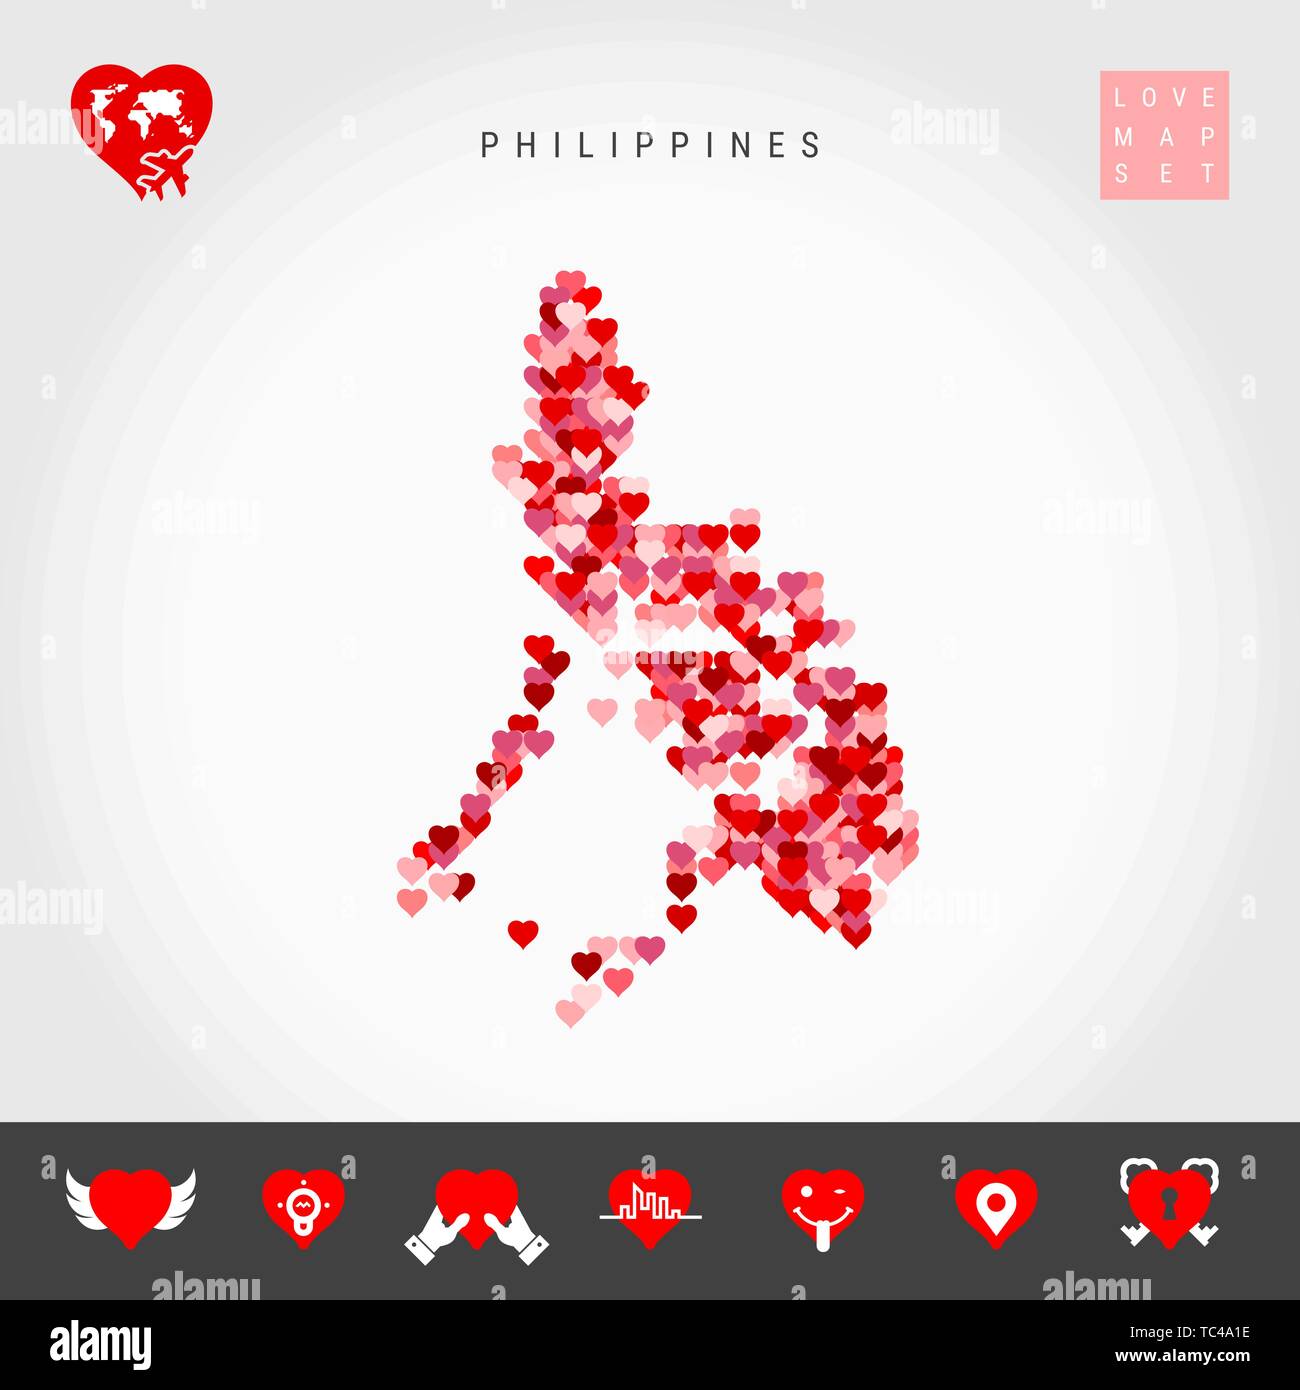 Ich liebe Philippinen. Rot und rosa Herzen Muster Vektor Karte von Philippinen isoliert auf grauen Hintergrund. Liebe Symbol gesetzt. Stock Vektor